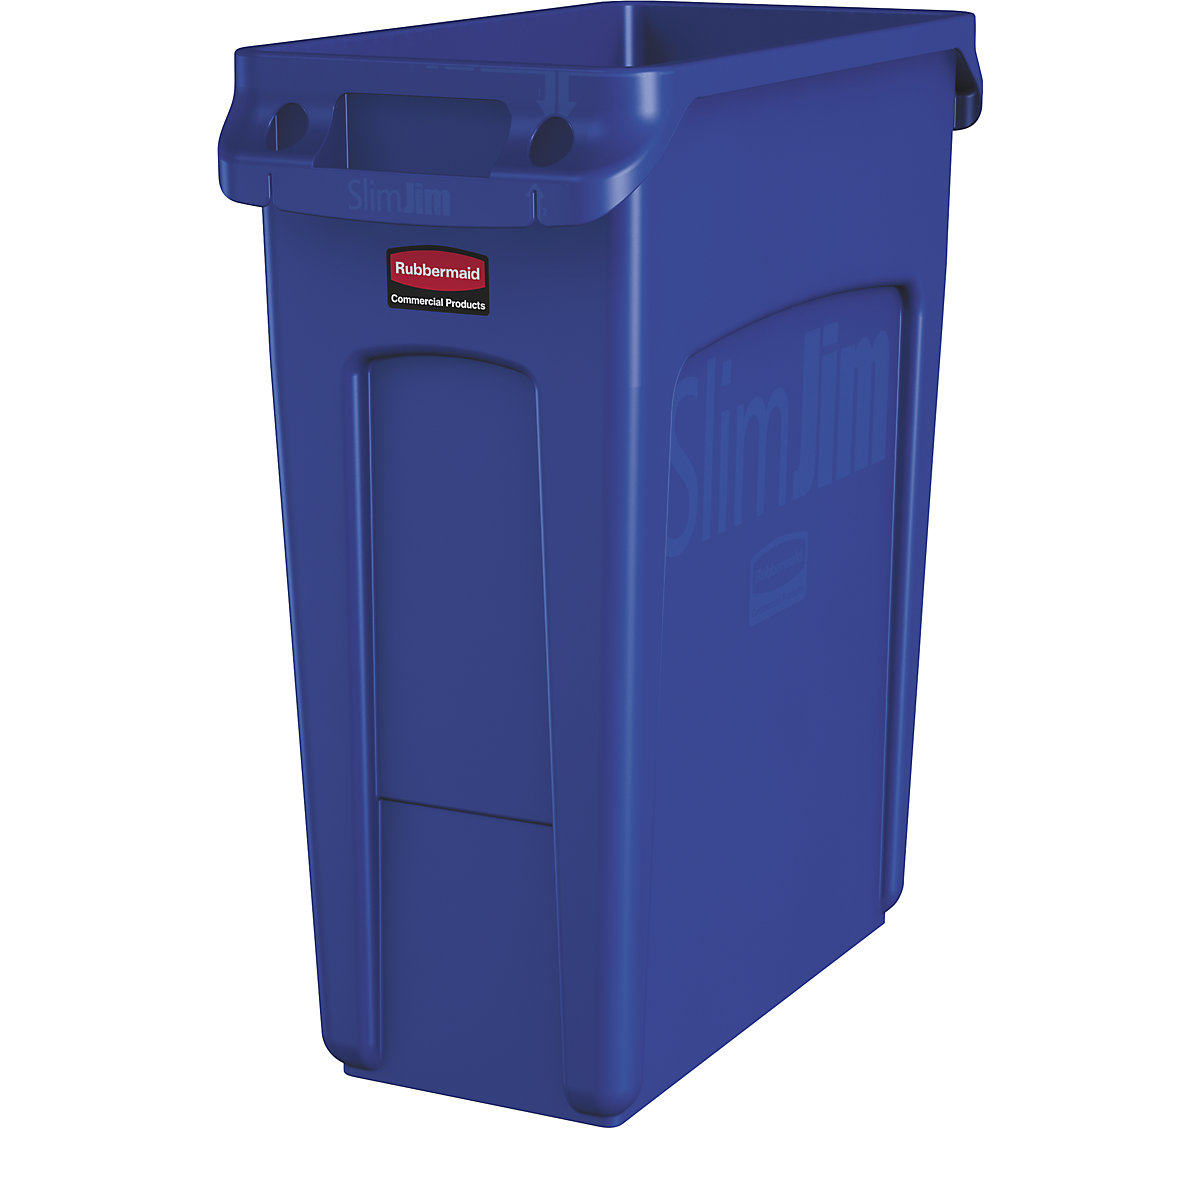 Recipient de colectare a deșeurilor reciclabile/coș de gunoi SLIM JIM® – Rubbermaid, volum de 60 l, cu canale de aerisire, albastru, minimum 3 buc.-8